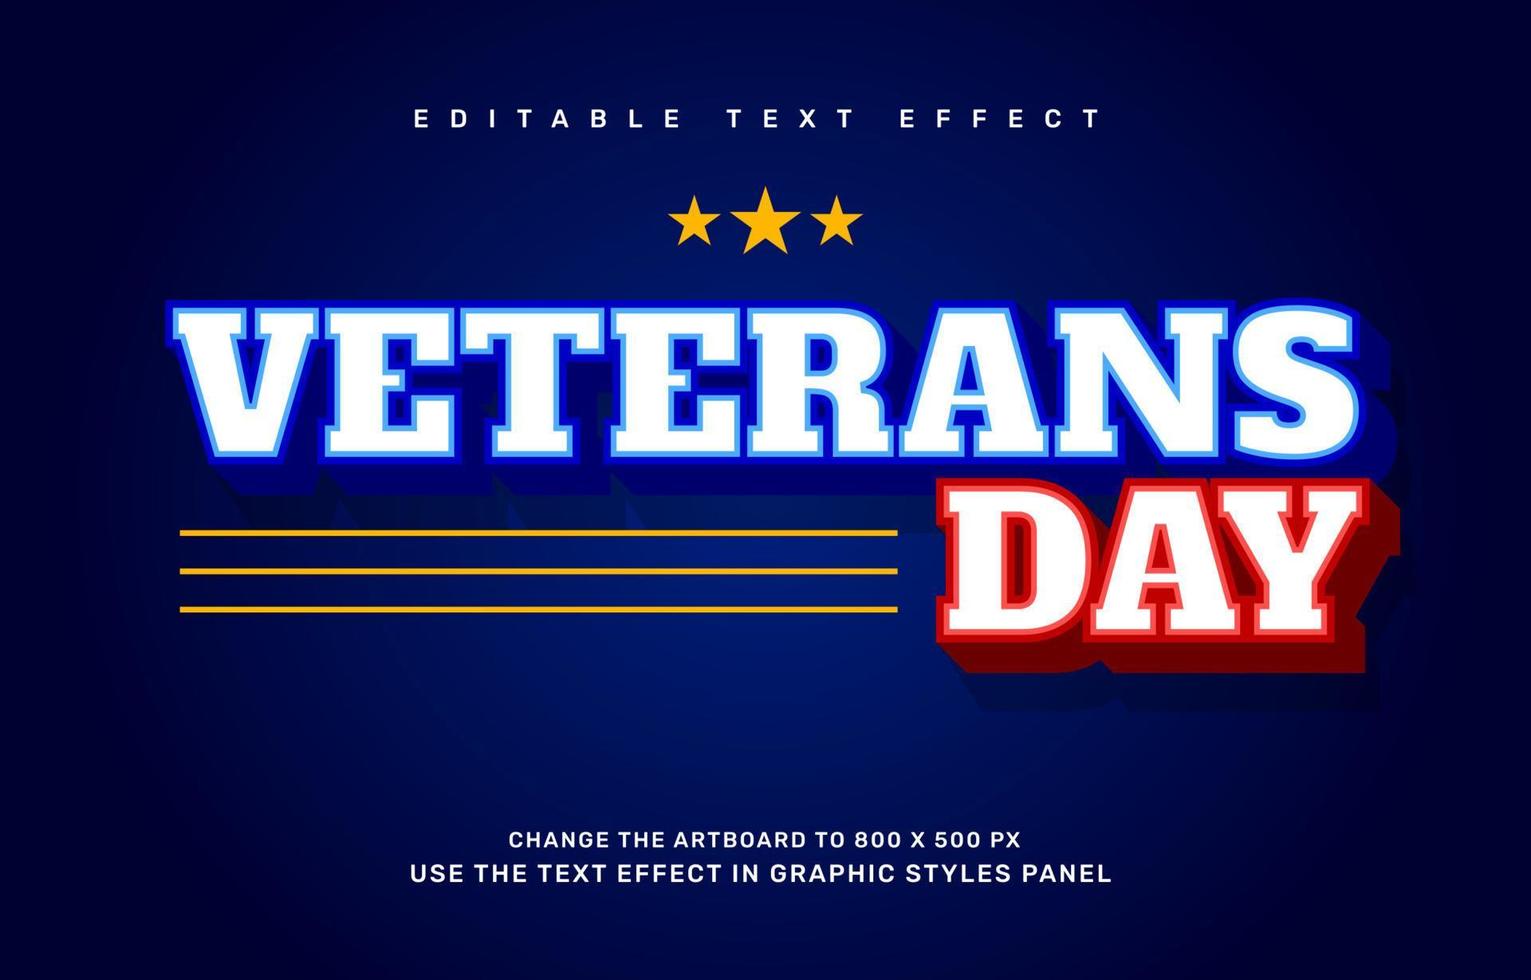 plantilla de efecto de texto editable del día de los veteranos vector